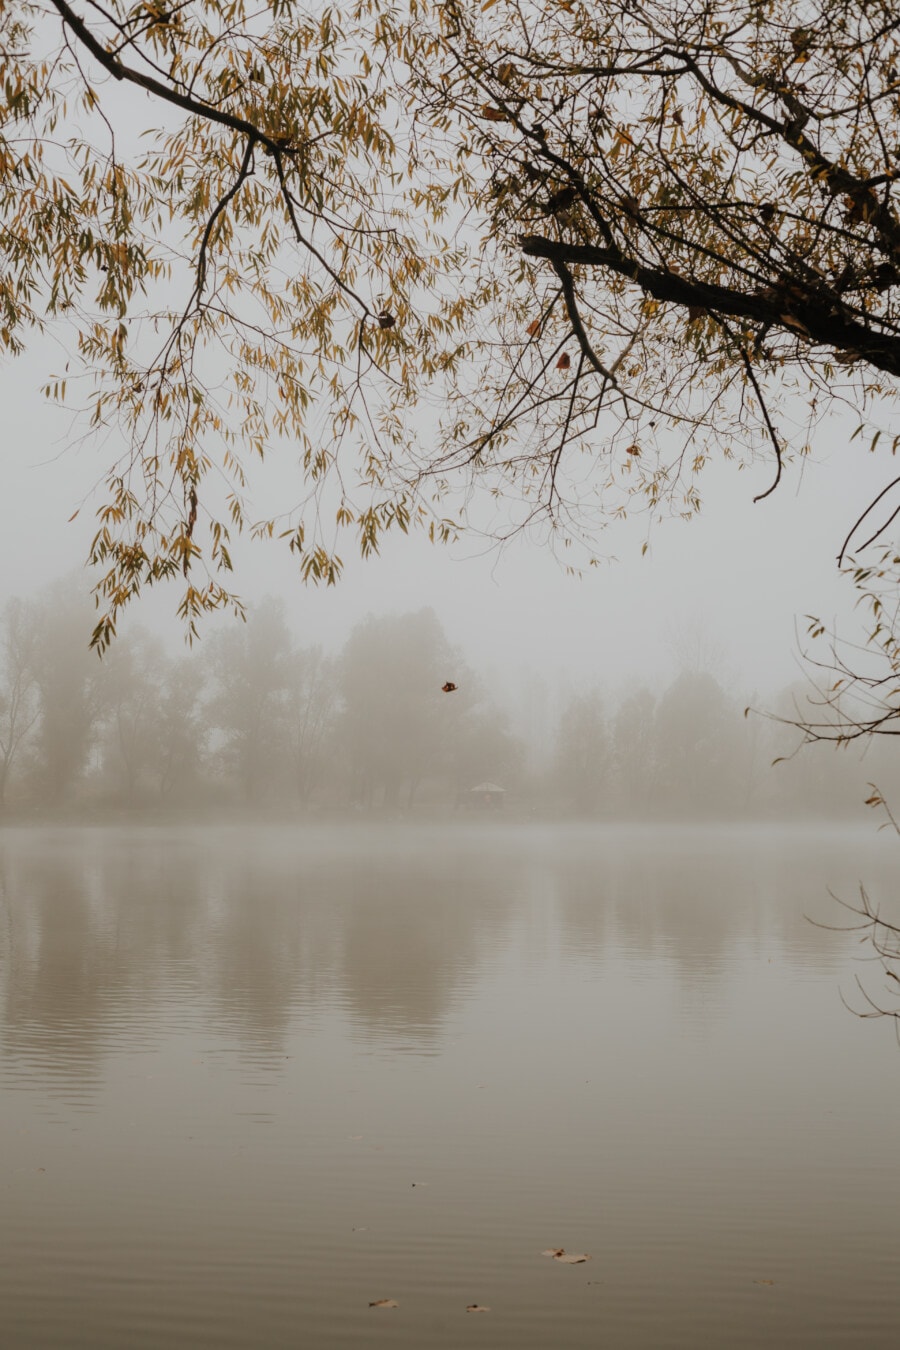 neblig, Nebel, am See, See, Herbstsaison, Struktur, Nebel, Wald, Natur, Wasser